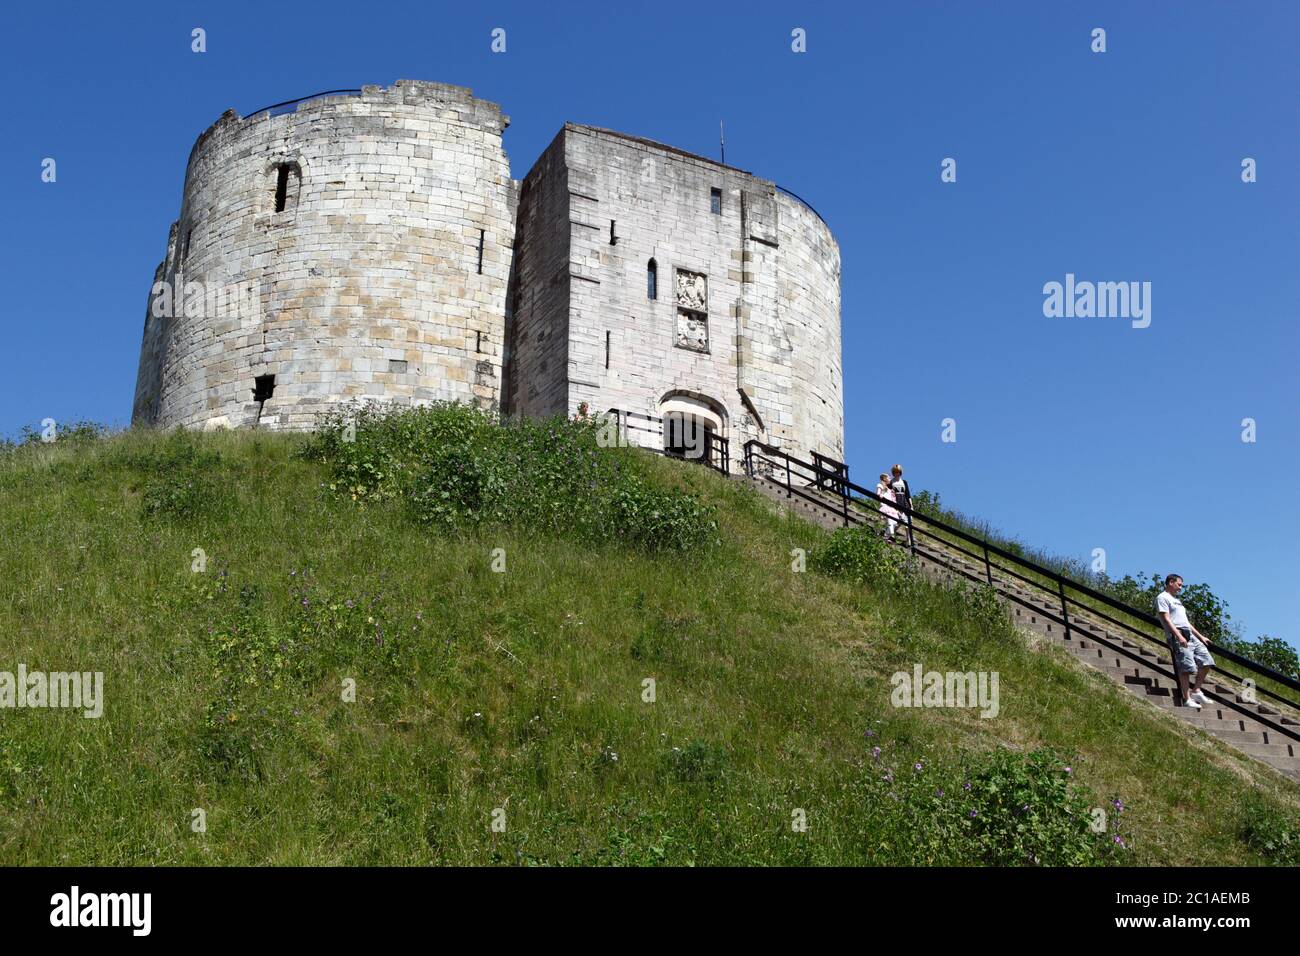 Clifford's Tower construite sur la butte où se trouvait autrefois un château en bois du XIe siècle, York, Yorkshire, Angleterre, Royaume-Uni, Europe Banque D'Images